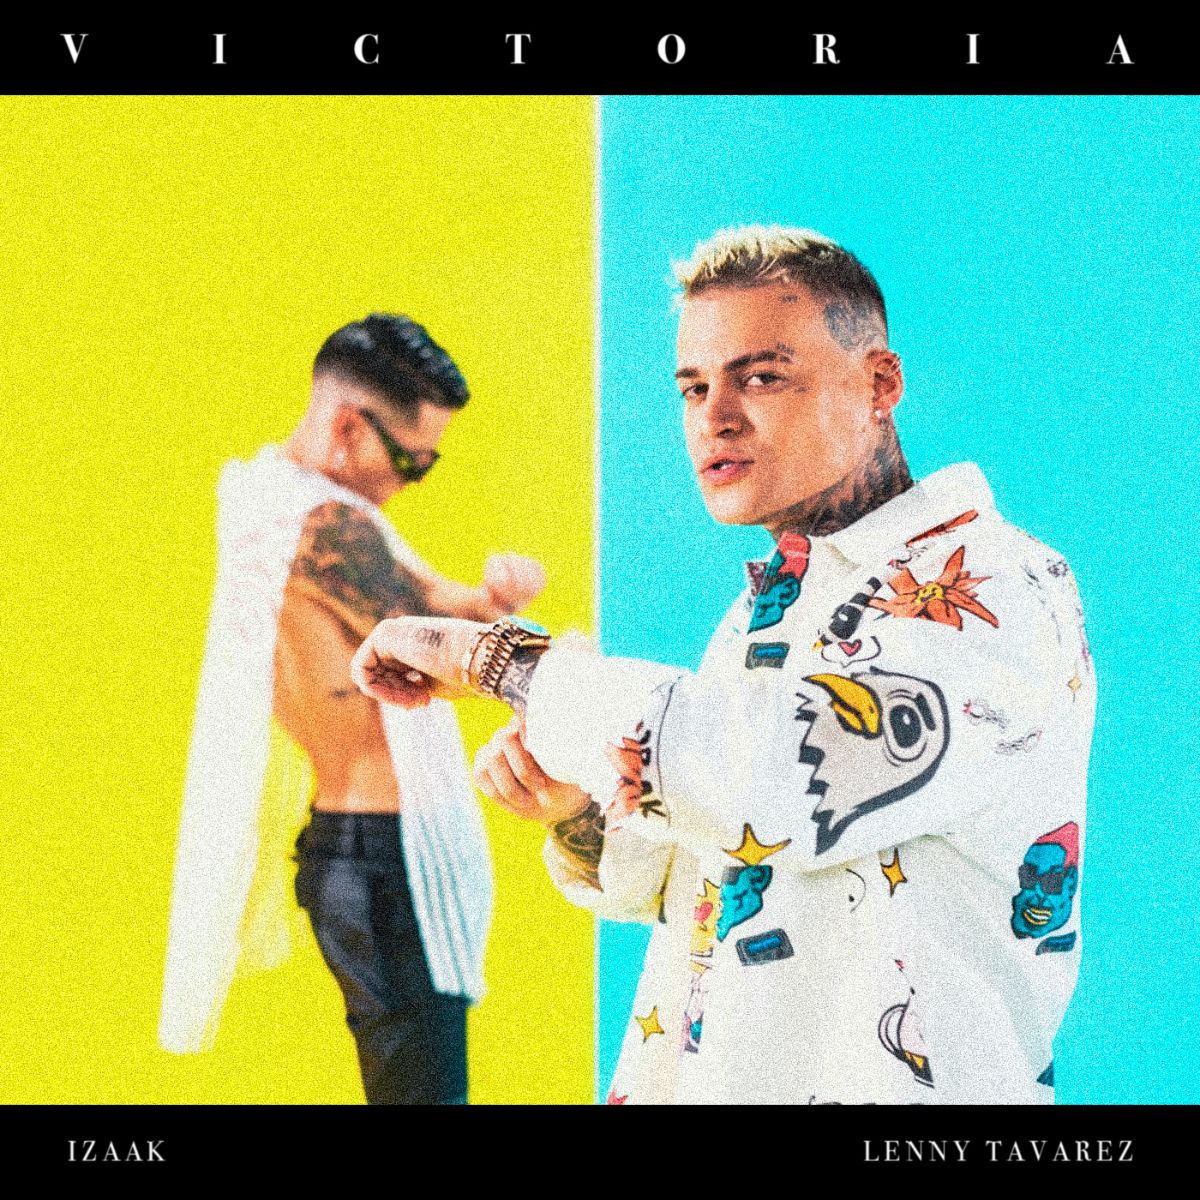 IZAAK une fuerzas a Lenny Tavarez en nuevo sencillo “Victoria”